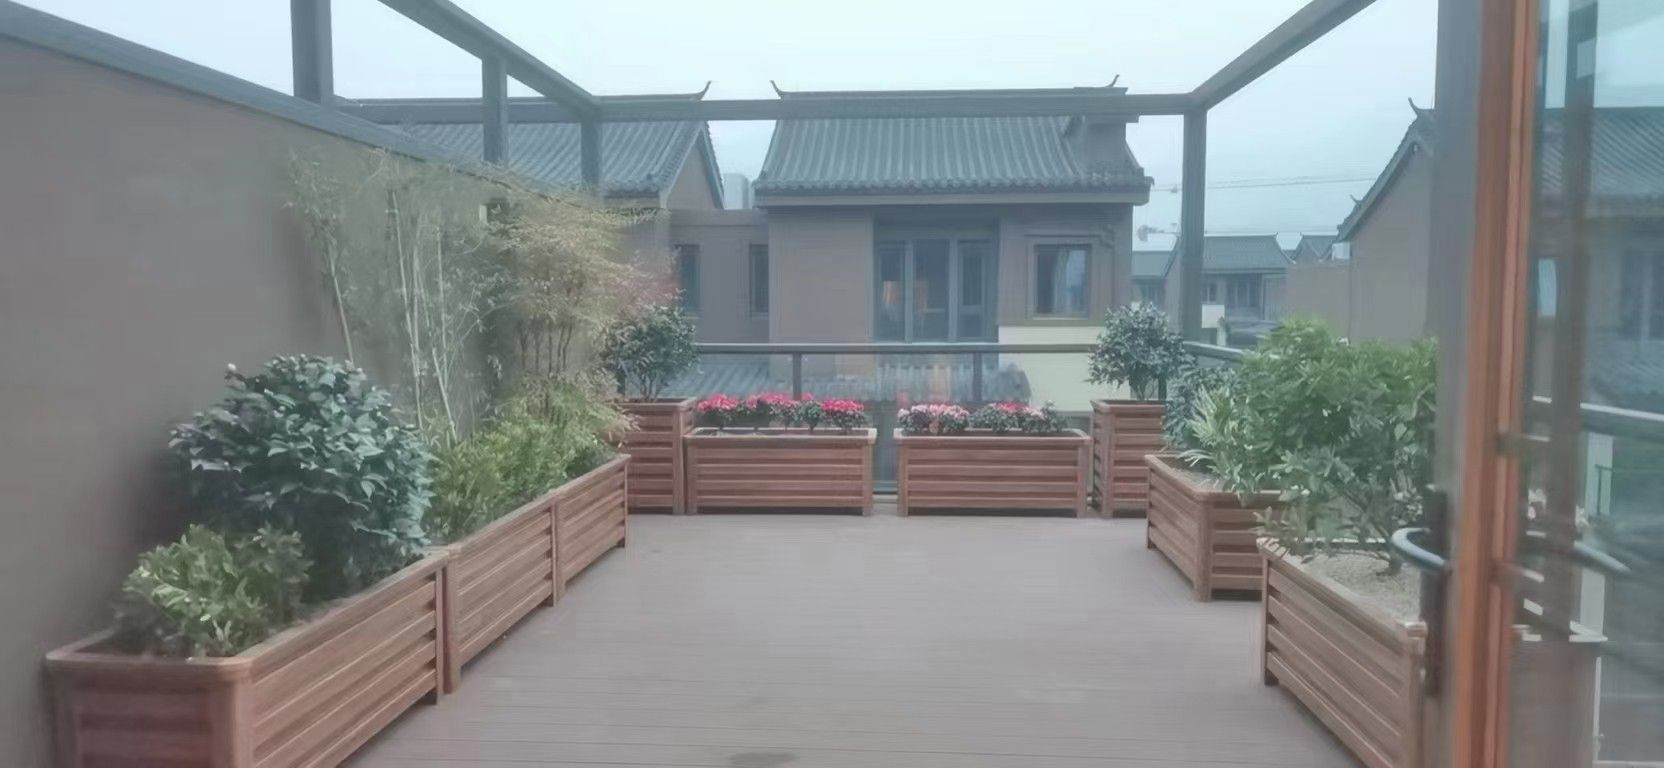 台湾庭院花箱